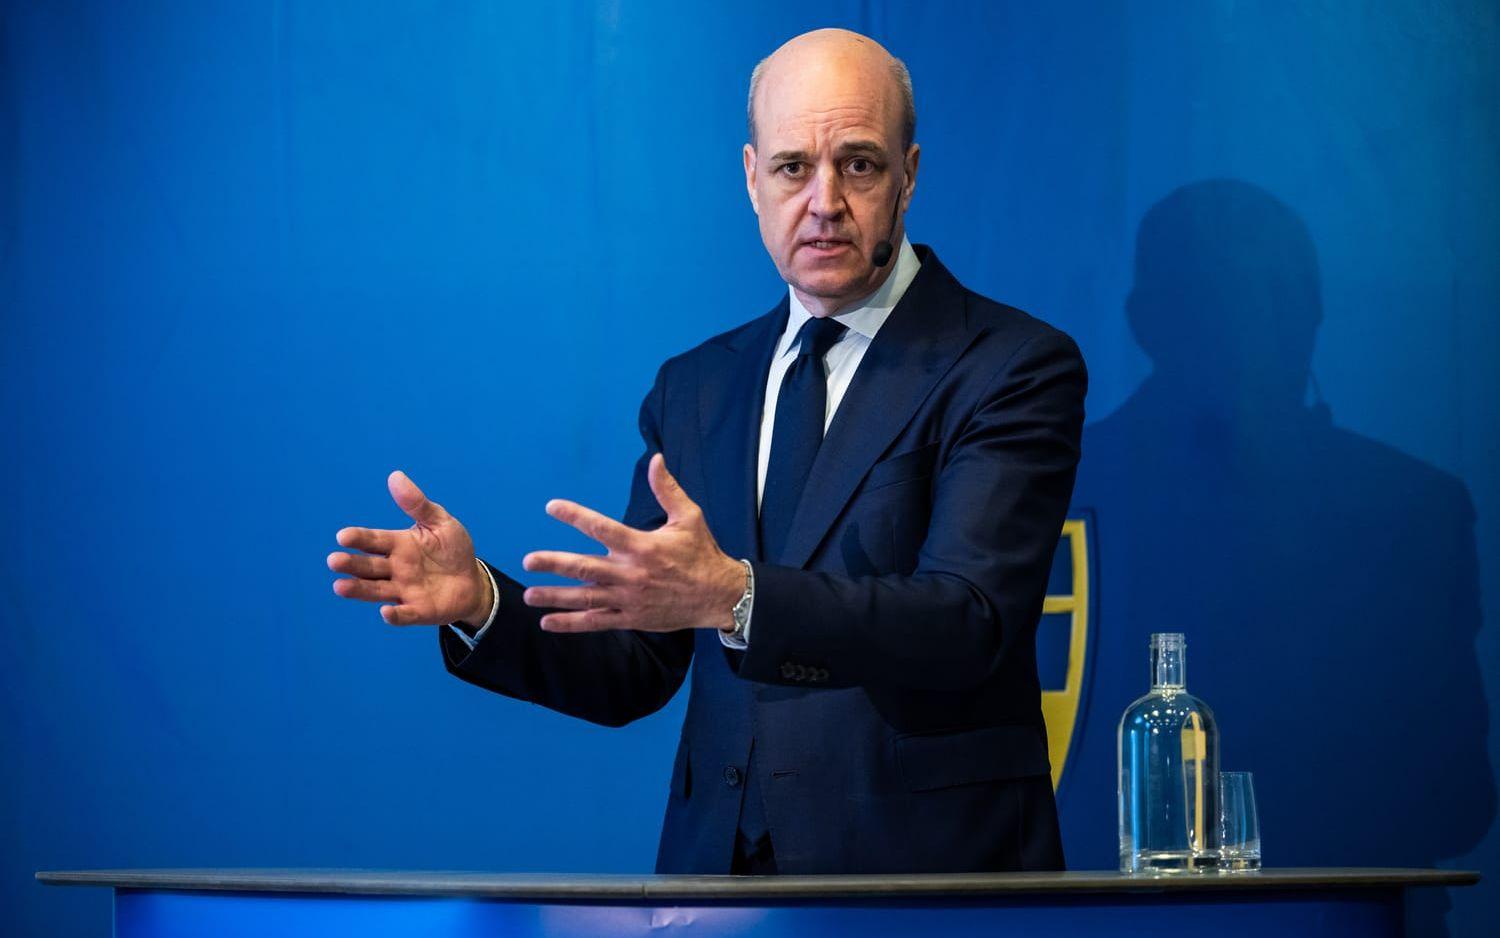 ”Risken just nu är att det här eskalerar, inte att det minskar. Det växer i omfattning. Det här är sannolikt inte den första och enda matchen den här säsongen som vi har haft problem med”, säger Fredrik Reinfeldt. 